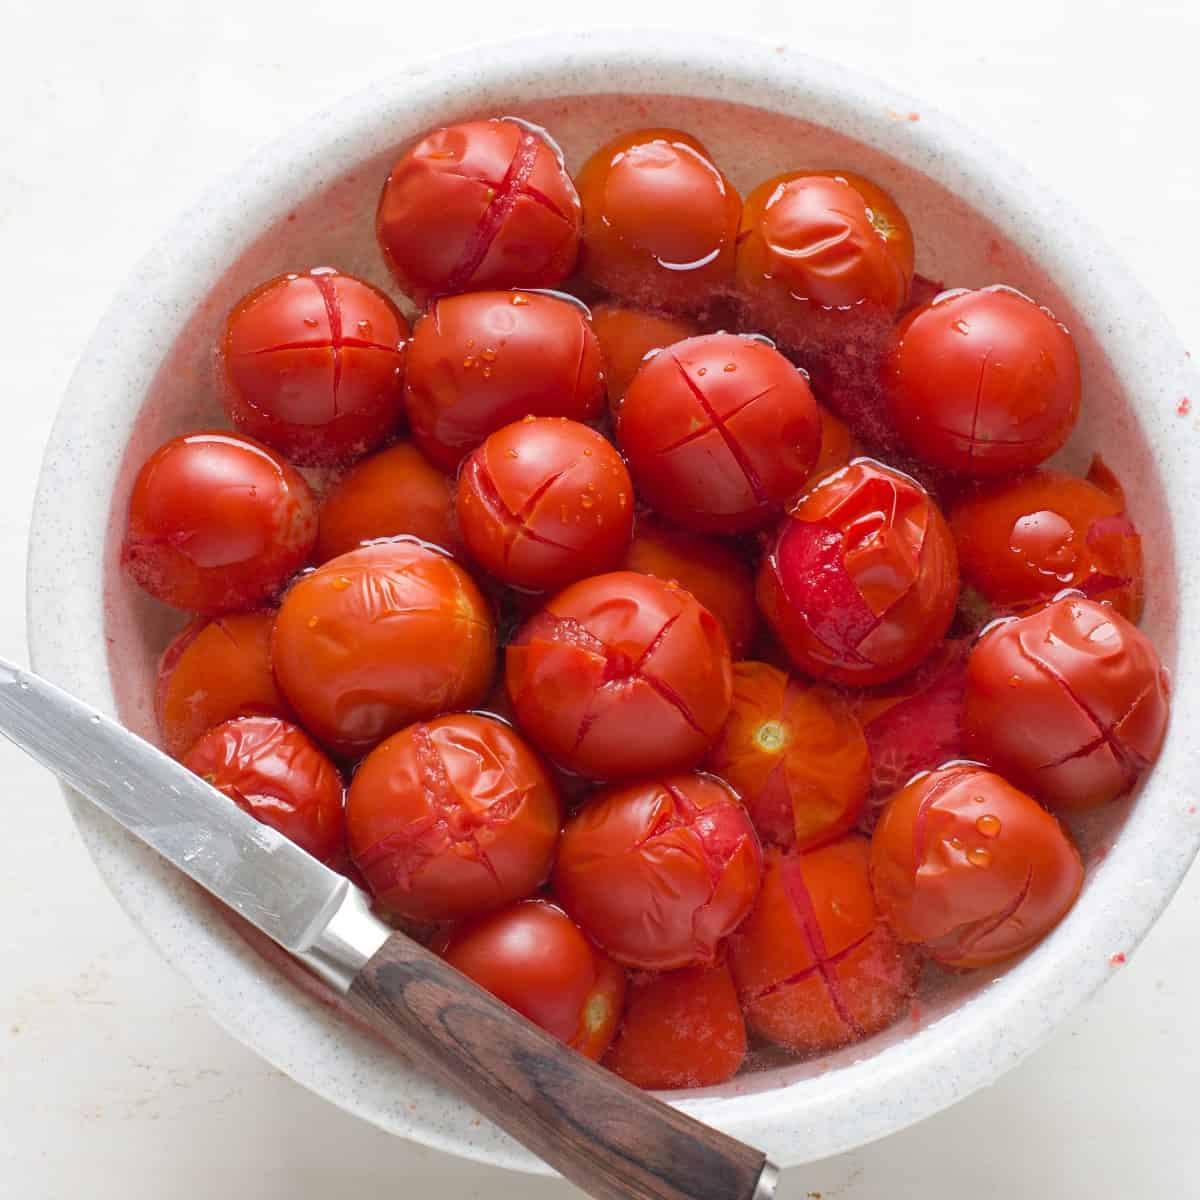 Abgeschreckte Tomaten im kalten Wasser, bereit für Schälen.